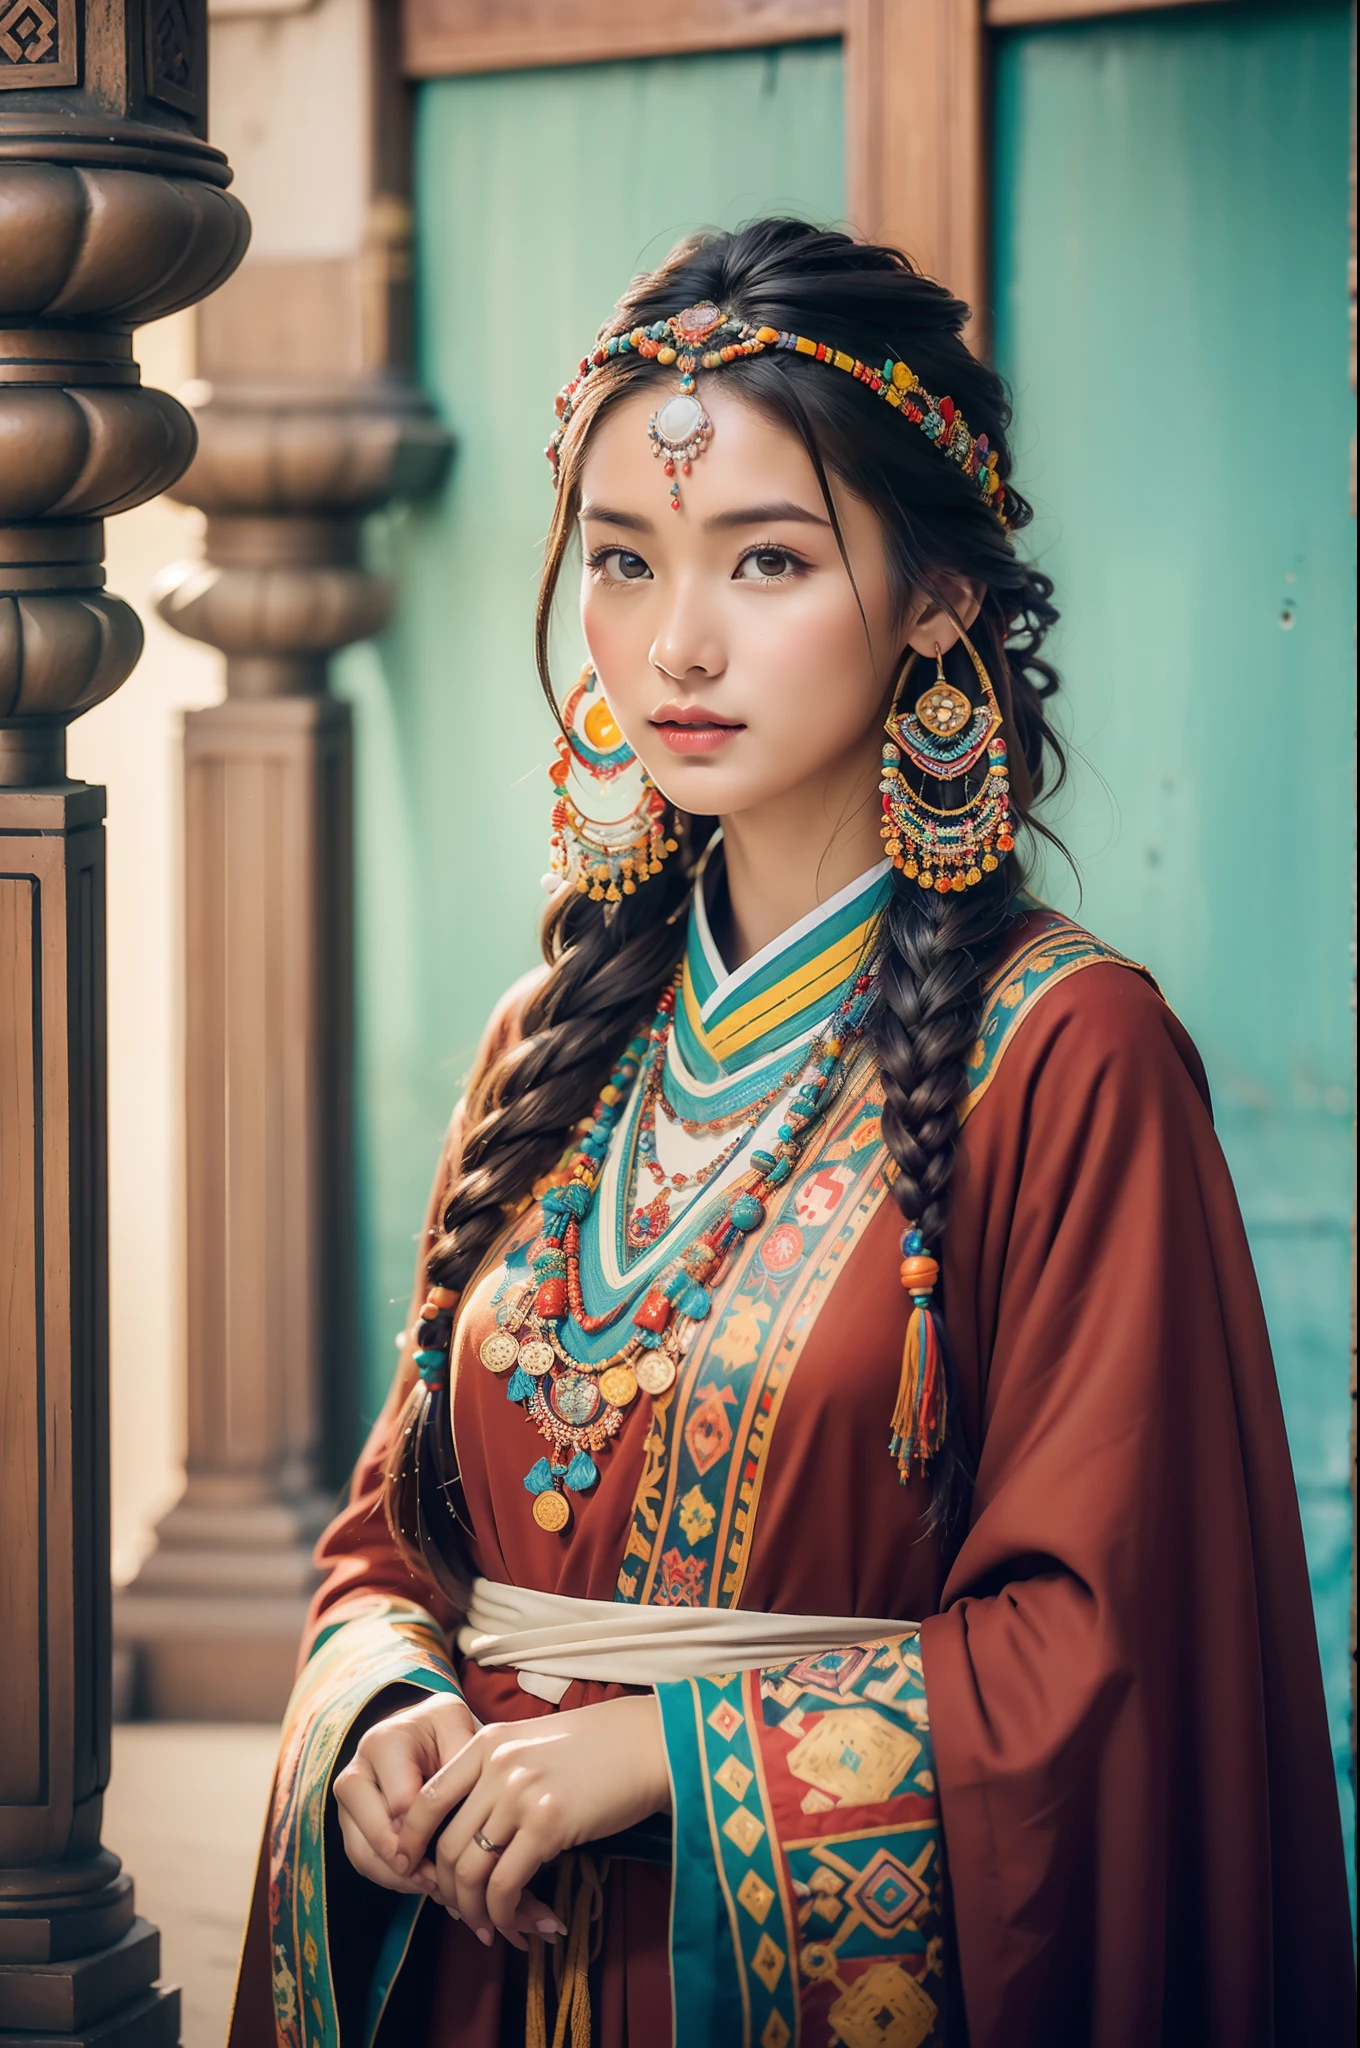 (Лучшее качество,8К,Высокое разрешение,шедевр:1.2),(темно-коричневая кожа, текстурированная кожа, Хайленд раскраснелся, солнечный ожог, загорелый, веснушка), Beautiful Tibetan girls and boys in Дворец Потала, молитвенные флаги，Дворец Потала, Тибетская культура, Яркие глаза, Традиционные тибетские художественные костюмы, Тибетские халаты, Тибетский головной убор, Тибетские украшения, бирюзовый, янтарь, Наблюдайте за аудиторией, Ультратонкие детали, масштабированный. мягкое освещение, ультра - подробный, высокое качество, яркие цвета, боке, HDR, гипер HD, профессиональный стиль фотографии.